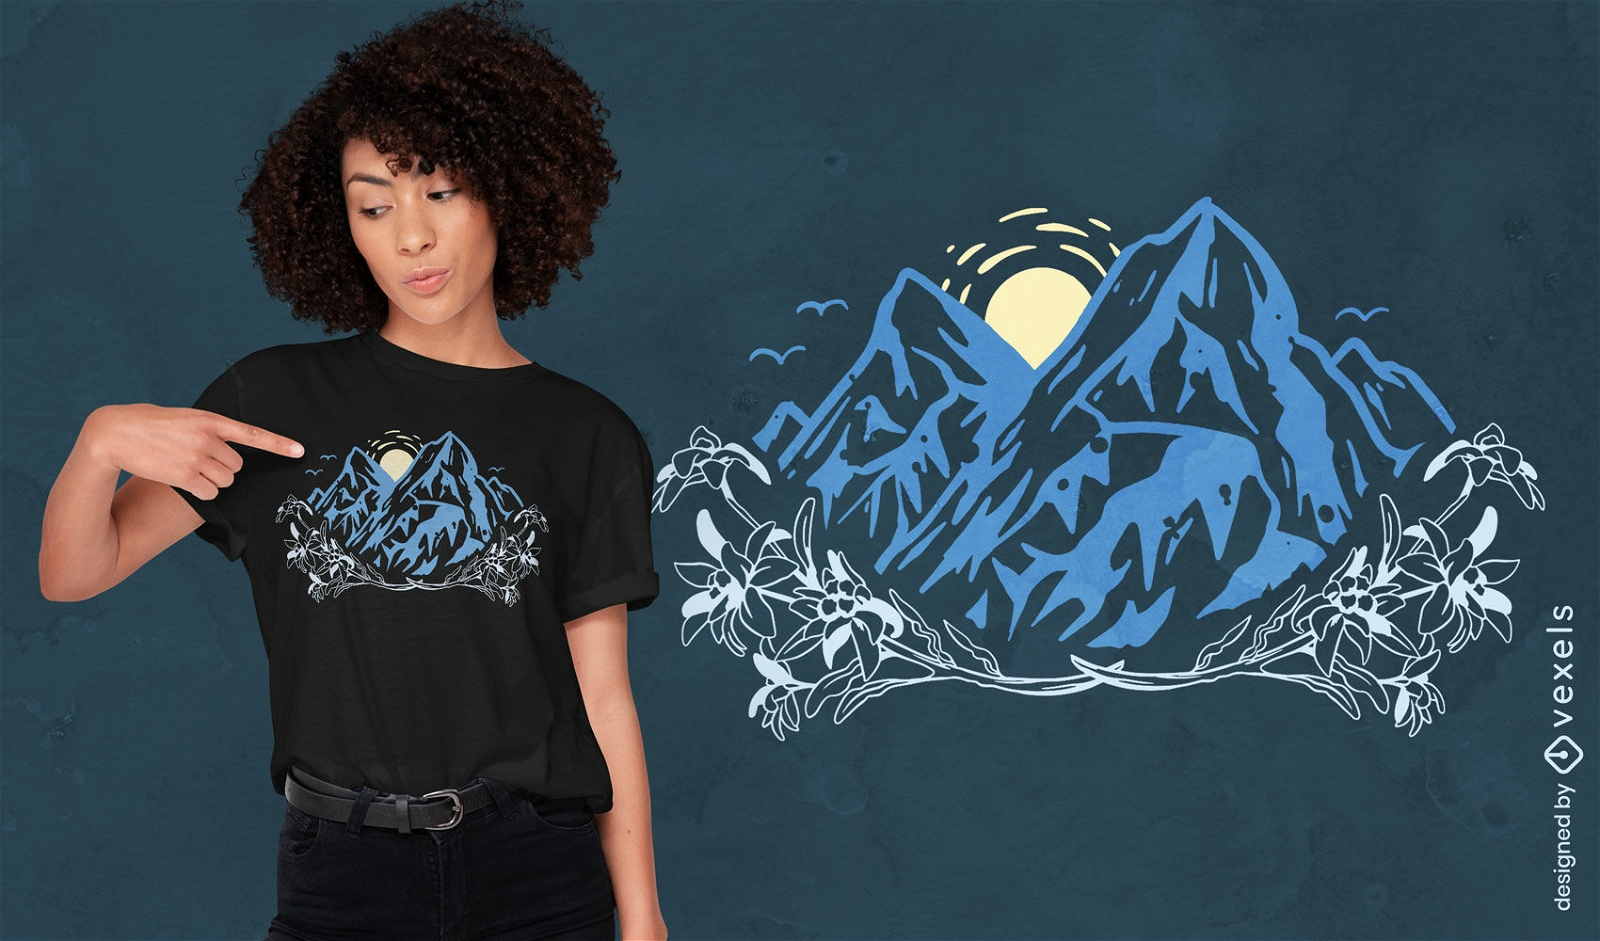 Landscape alps mountains t-shirt design